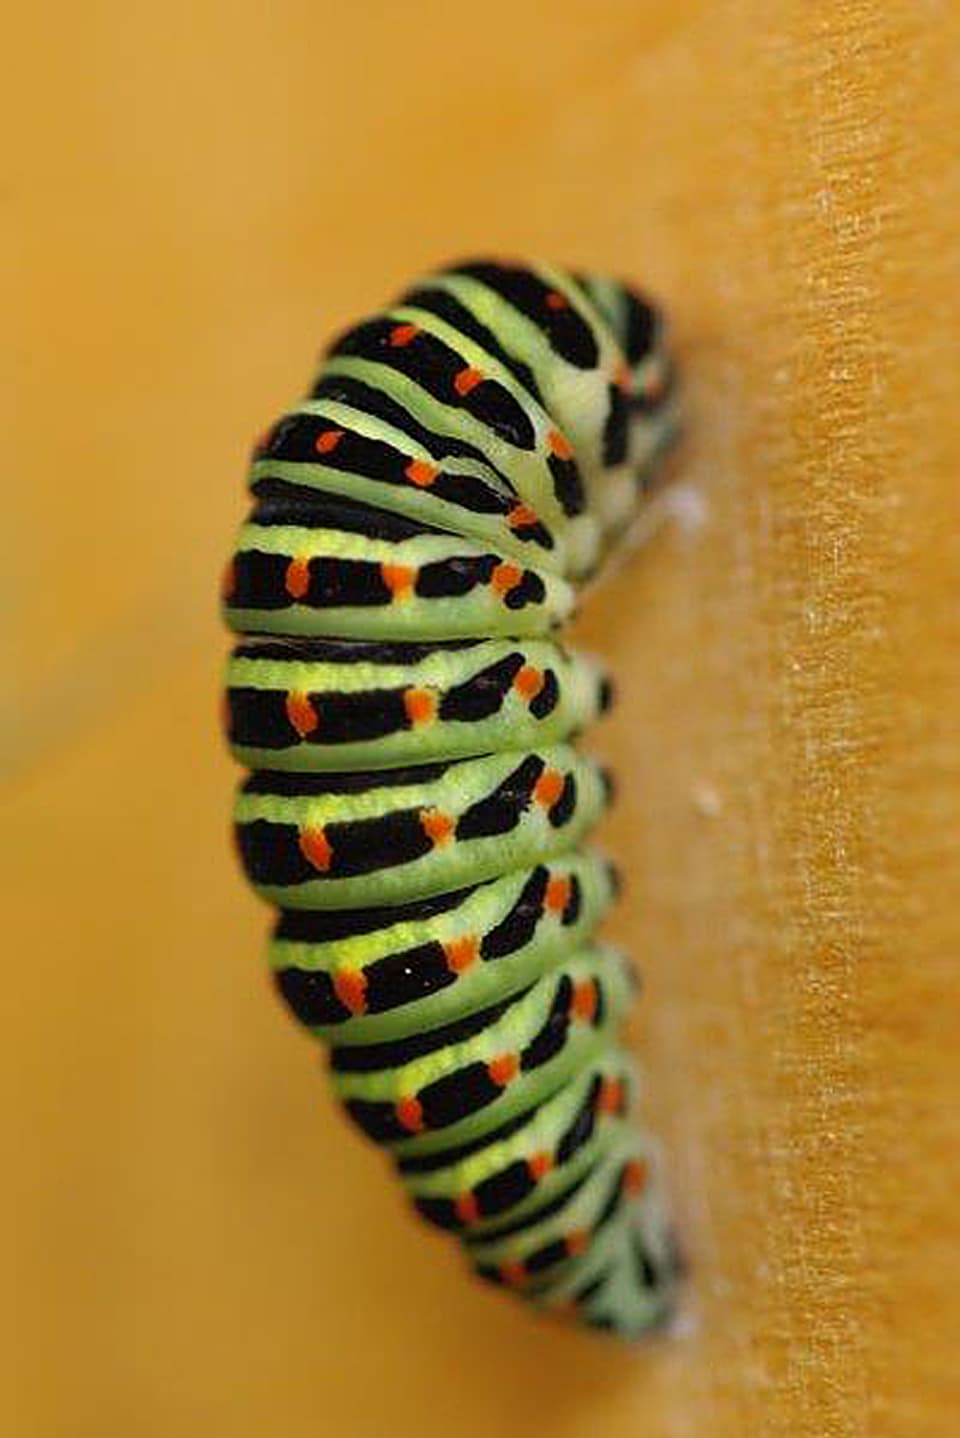 Ausgewachsene, vier Zentimeter lange, orangegepunktete Schwalbenschwanz-Raupe mit schwarzen und hellgrünen Quer-streifen.